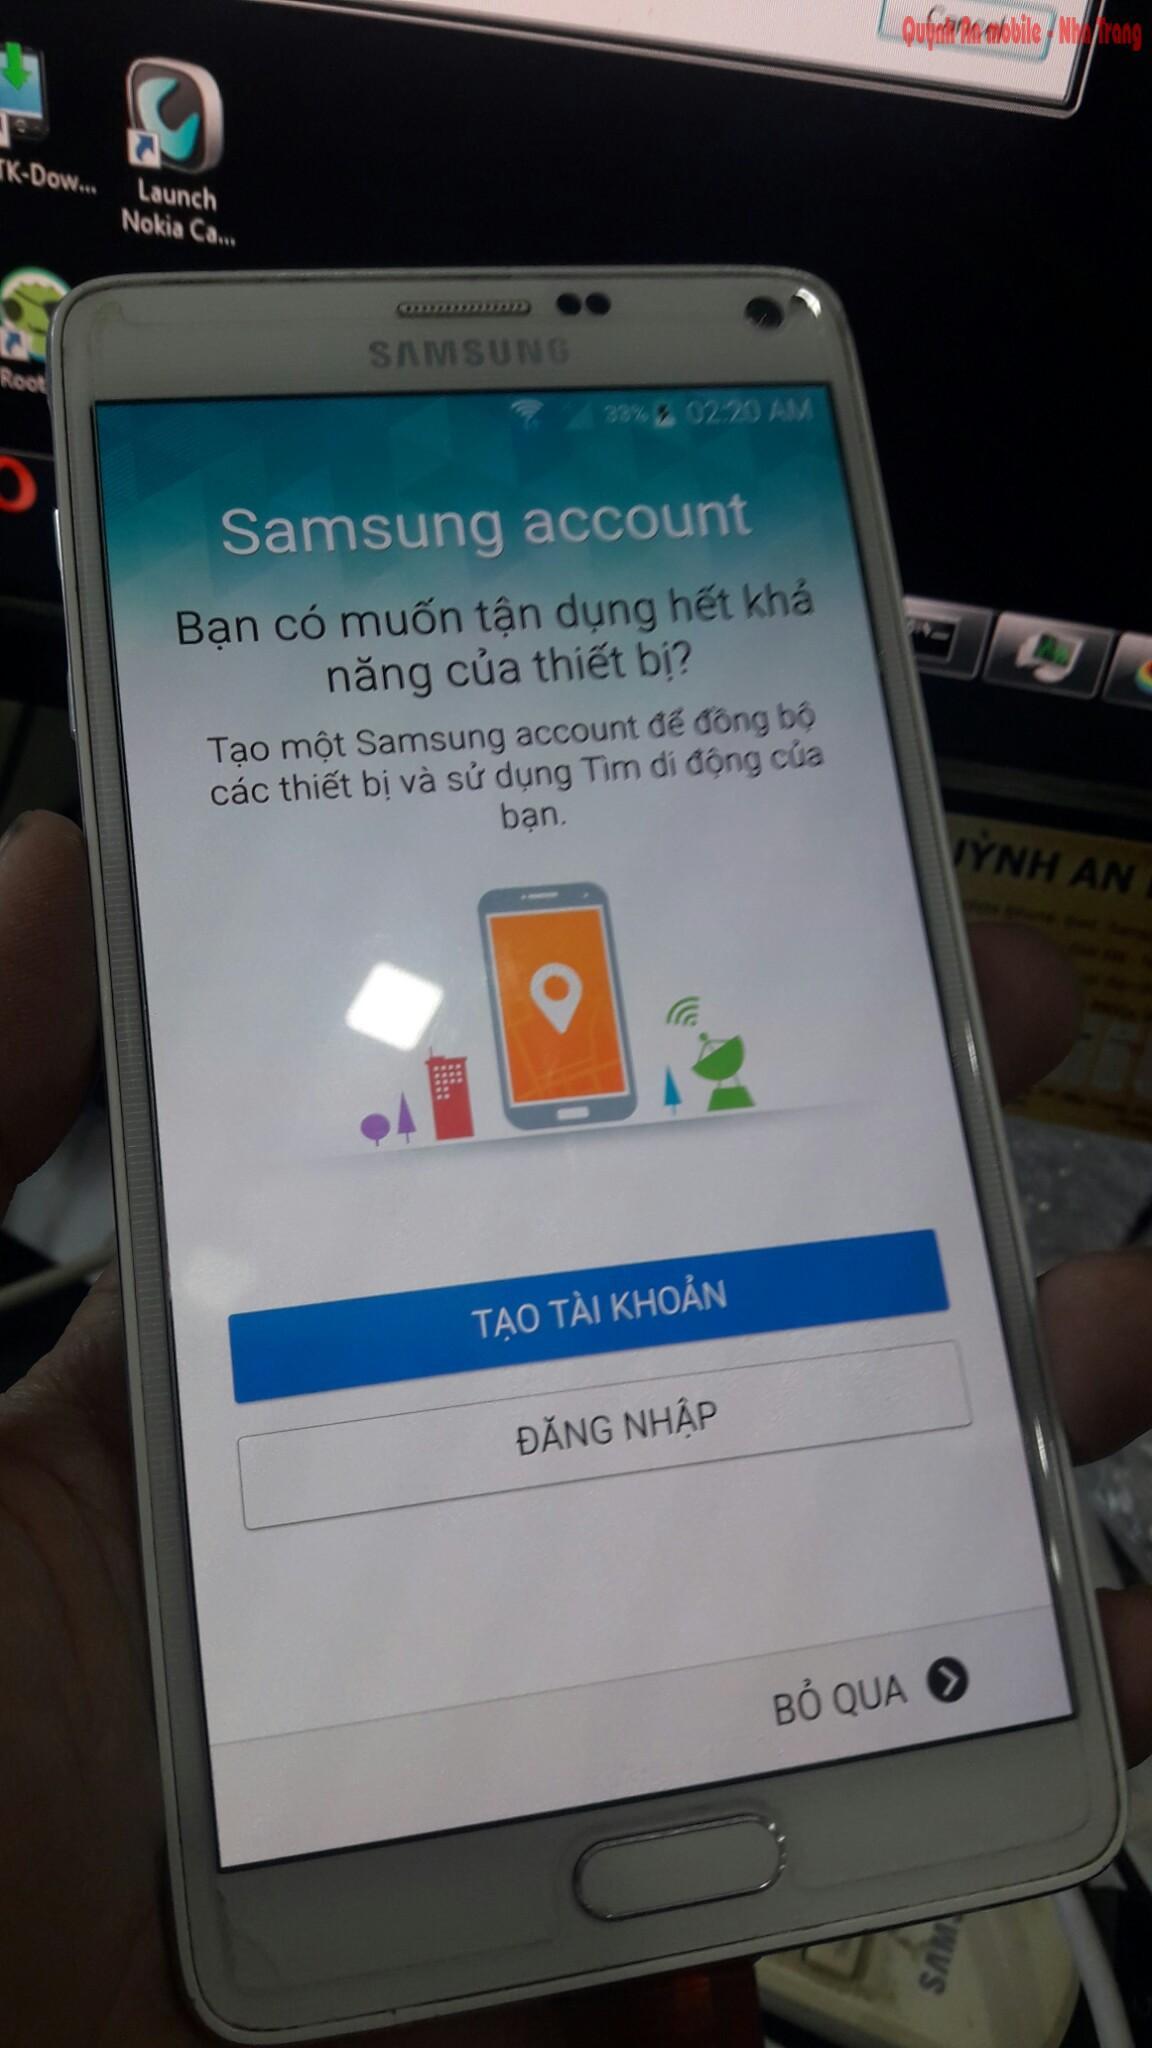 Sau khi xóa tài khoản samsung cũ trên máy tại Quỳnh An mobile, khách hàng có thể đăng nhập 1 tài khoản khác hoặc bỏ qua việc nhập tài khoản và tiếp tục sử dụng chiếc điện thoại của mình